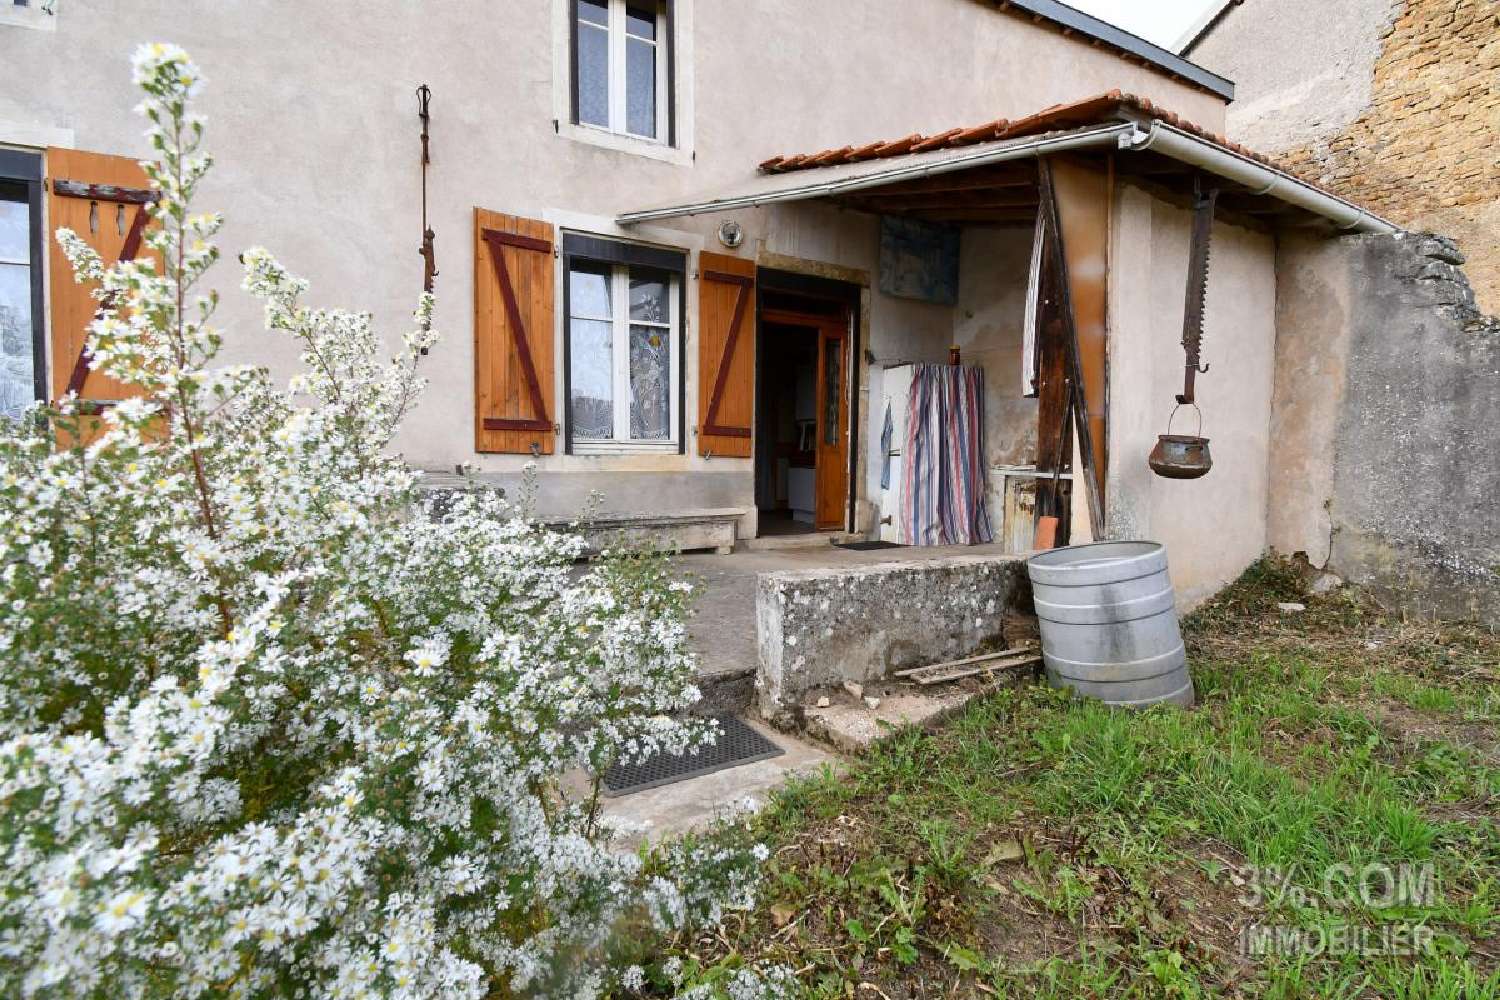  à vendre maison de village Vicherey Vosges 3